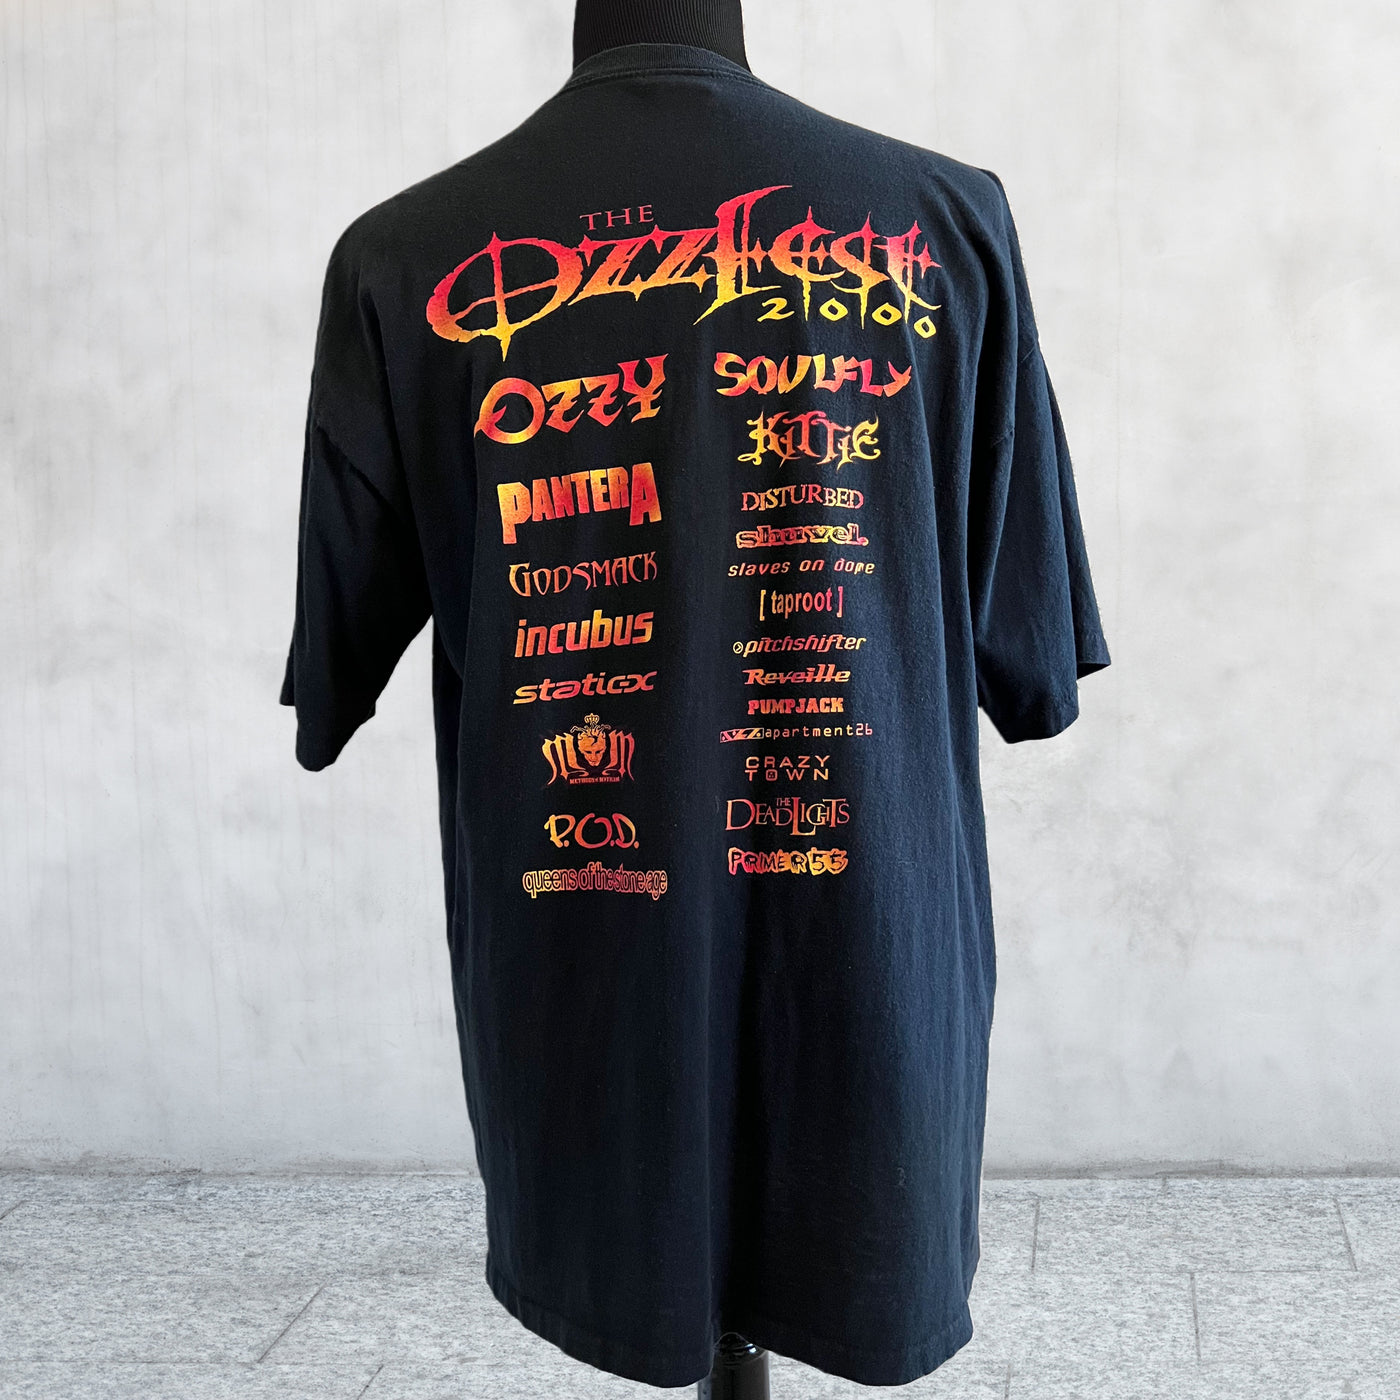 Vintage 2000 The Ozzfeast Concert T-shirt. XL